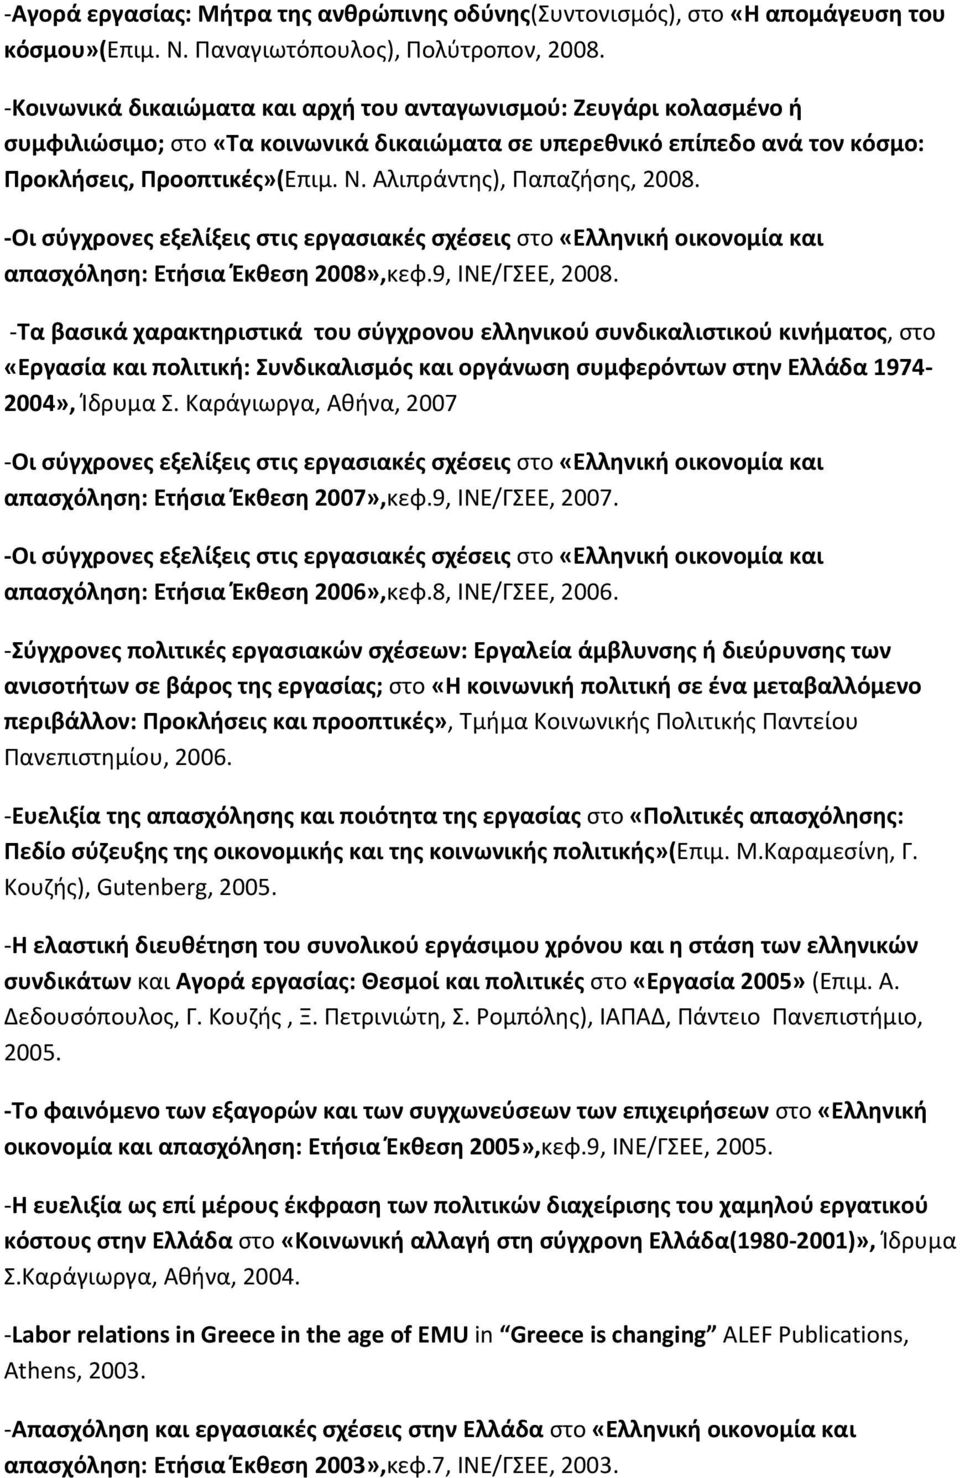 Αλιπράντης), Παπαζήσης, 2008. -Οι σύγχρονες εξελίξεις στις εργασιακές σχέσεις στο «Ελληνική οικονομία και απασχόληση: Ετήσια Έκθεση 2008»,κεφ.9, ΙΝΕ/ΓΣΕΕ, 2008.